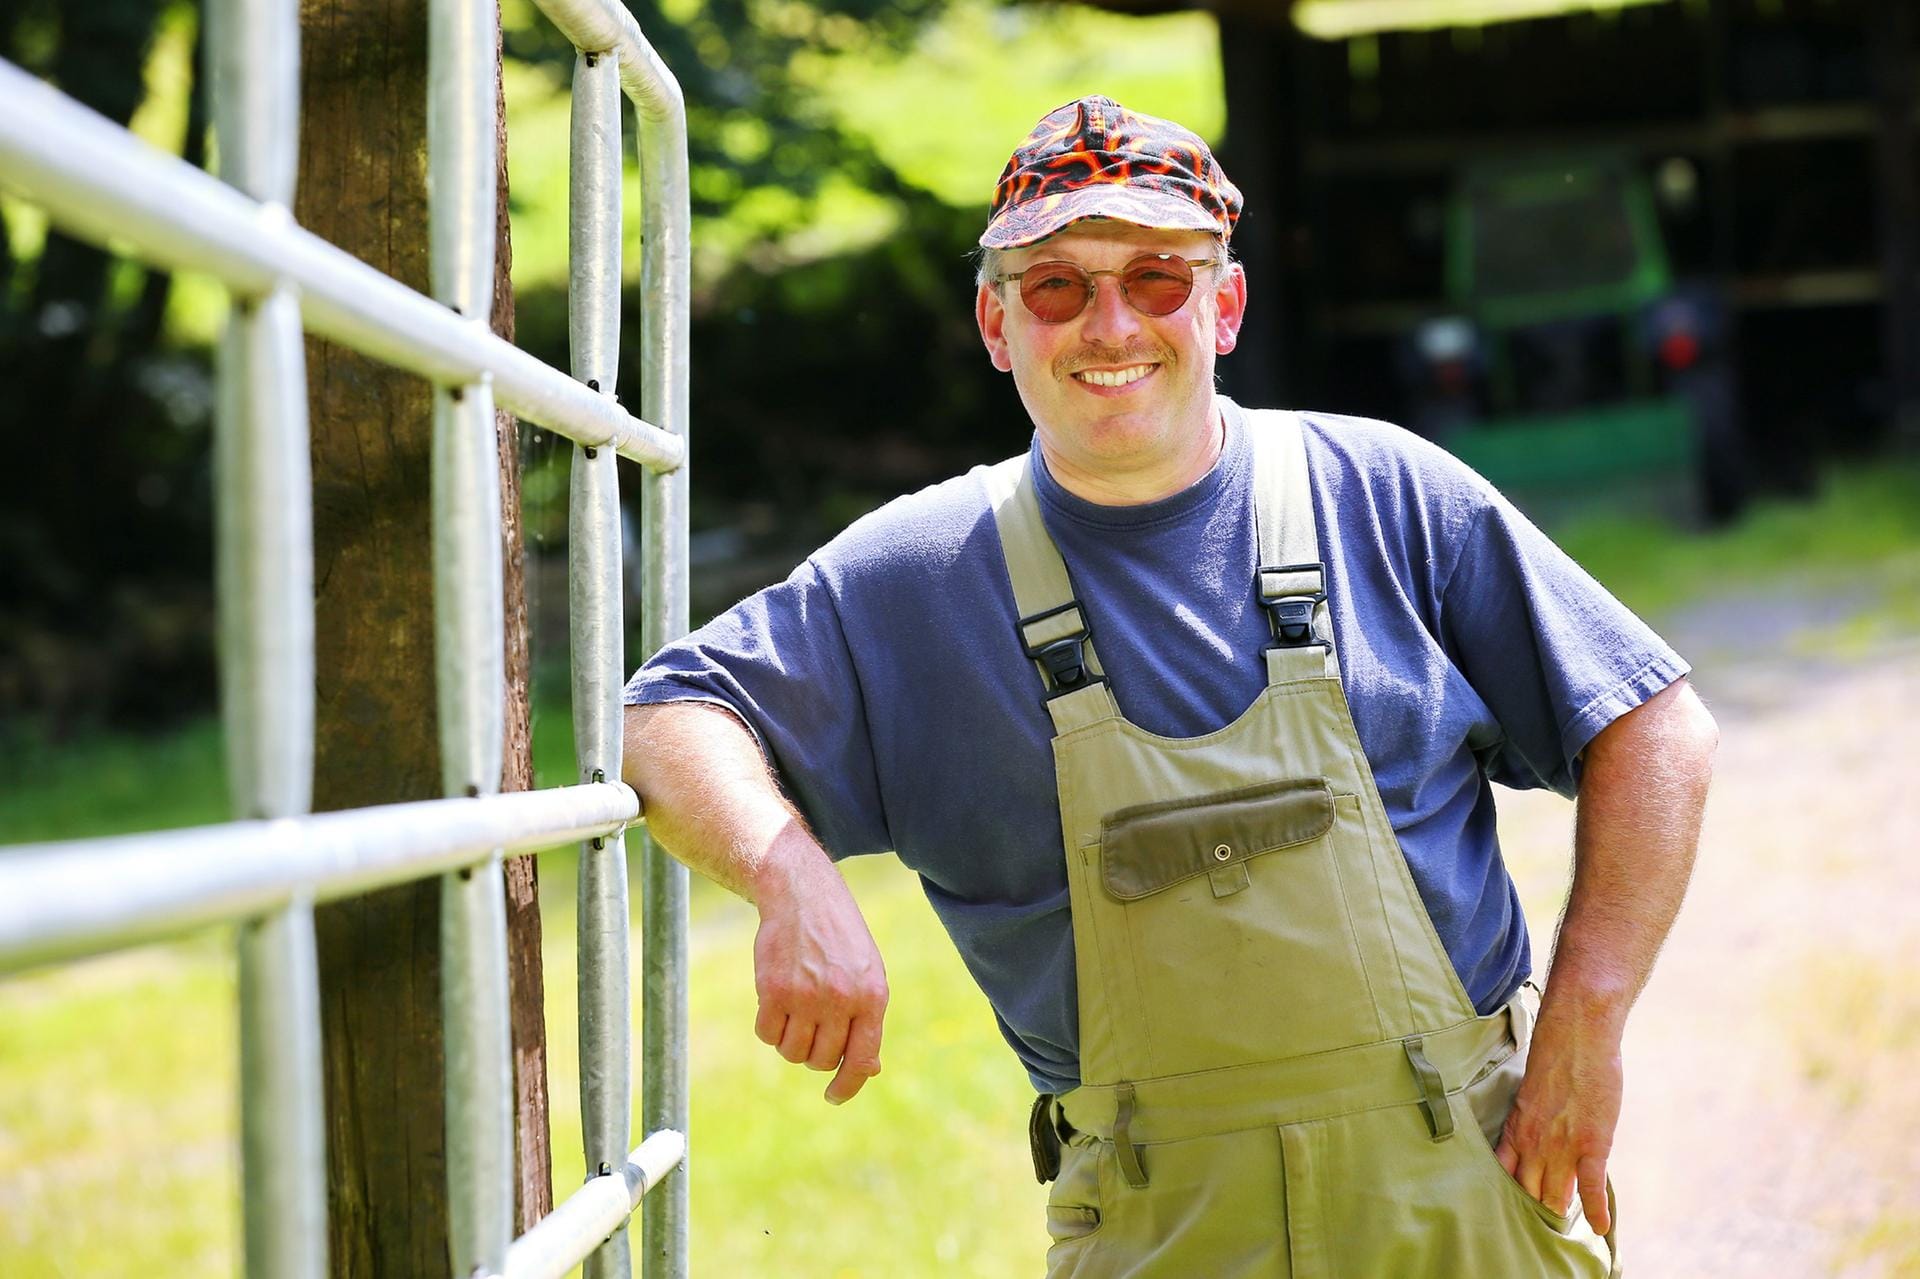 ...und Berthold (47), der fleißige Pfälzer, sind Brüder. Sie bewirtschaften gemeinsam im Nebenerwerb 8 Hektar Grünland und kümmern sich liebevoll um ihre Schafe, Esel und Hasen.